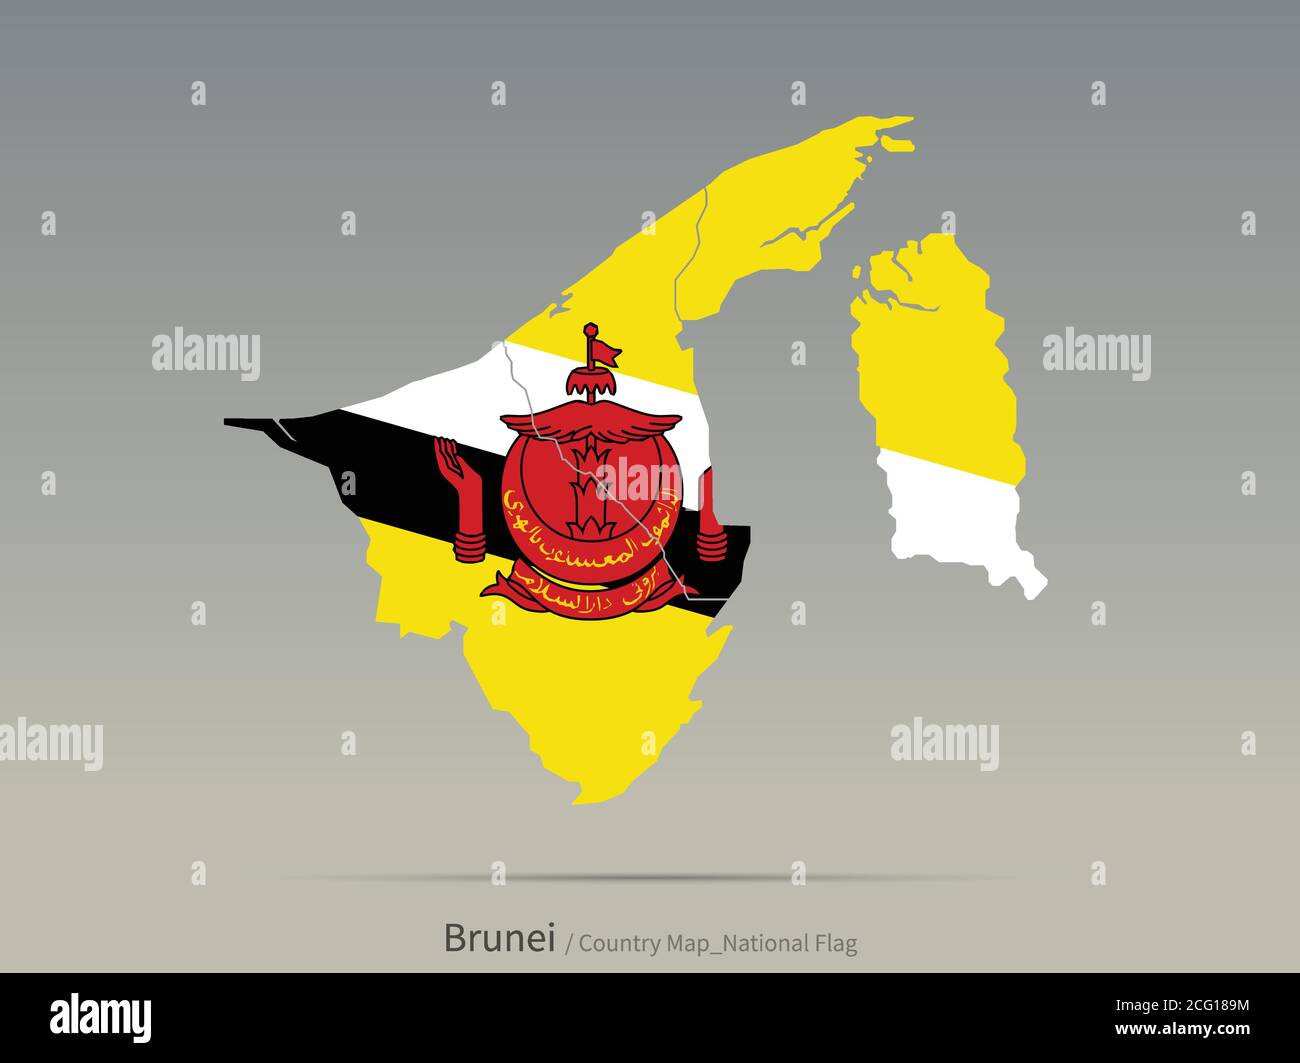 Bandiera Brunei isolata sulla mappa. Mappa e bandiera dei paesi asiatici. Illustrazione Vettoriale